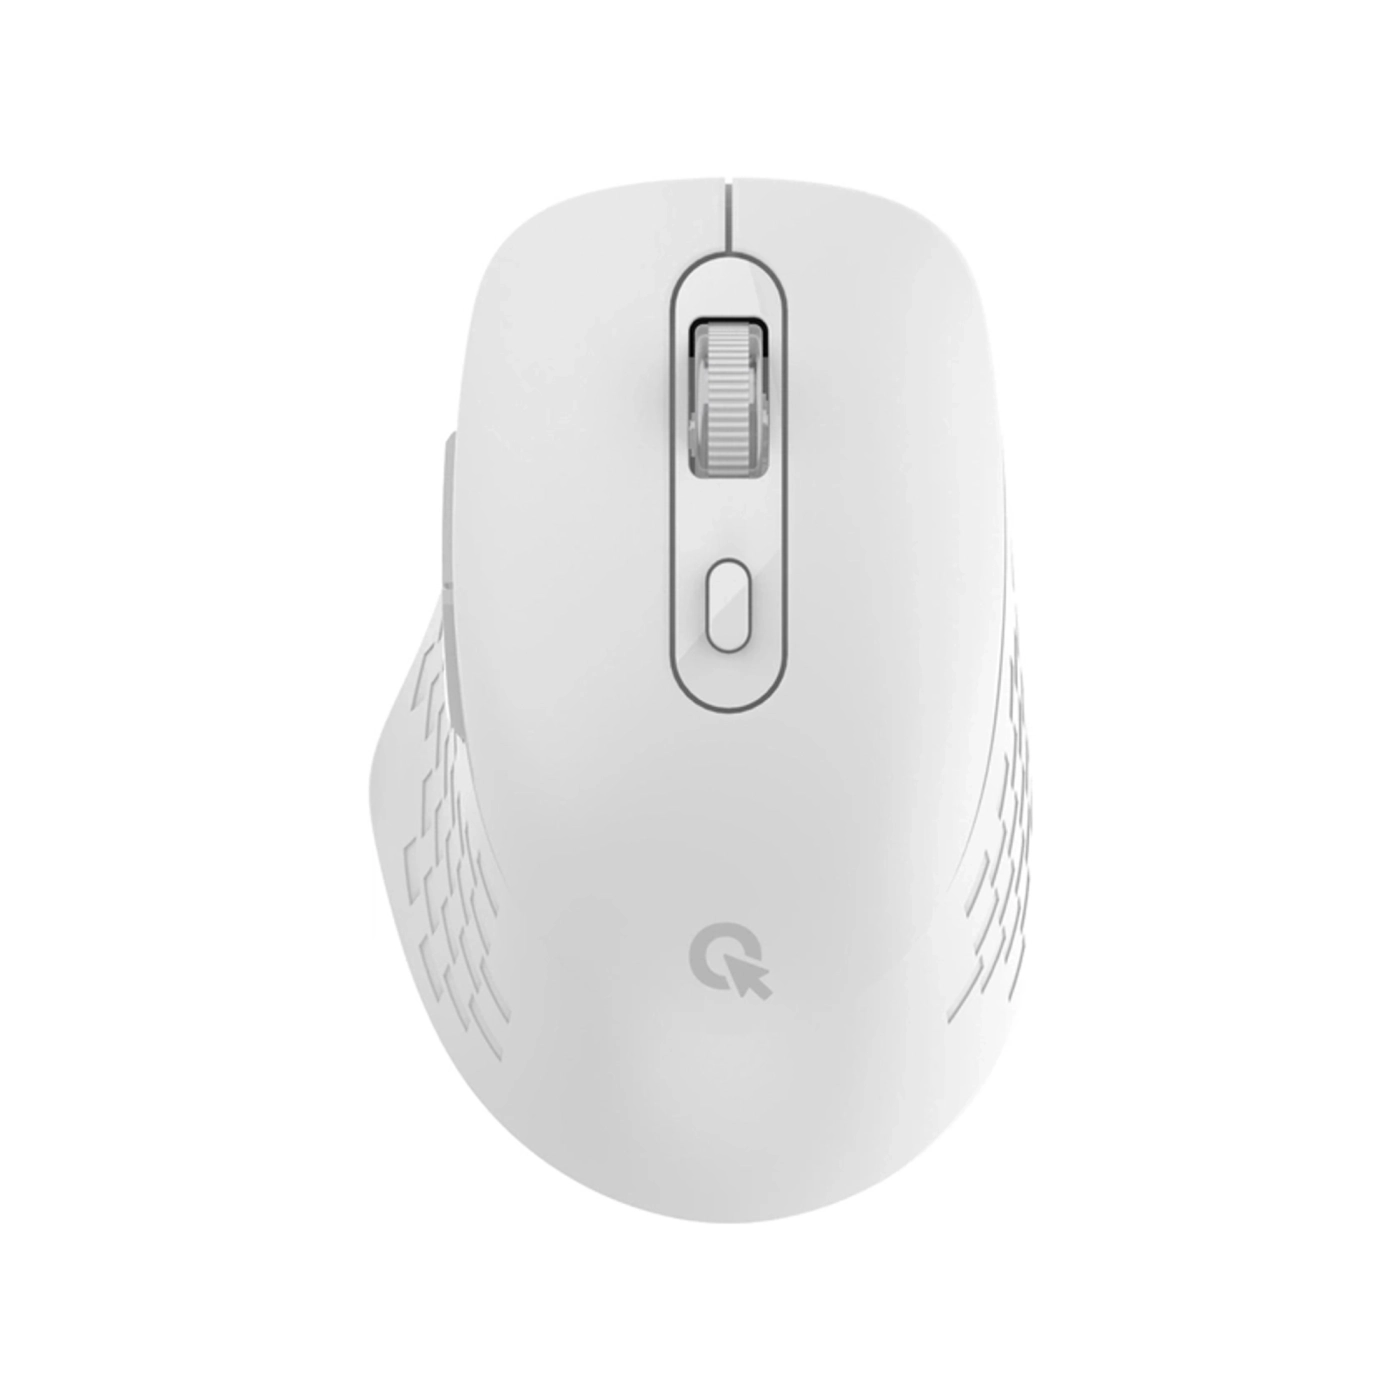 Купить Мышка OfficePro M230W White - фото 1